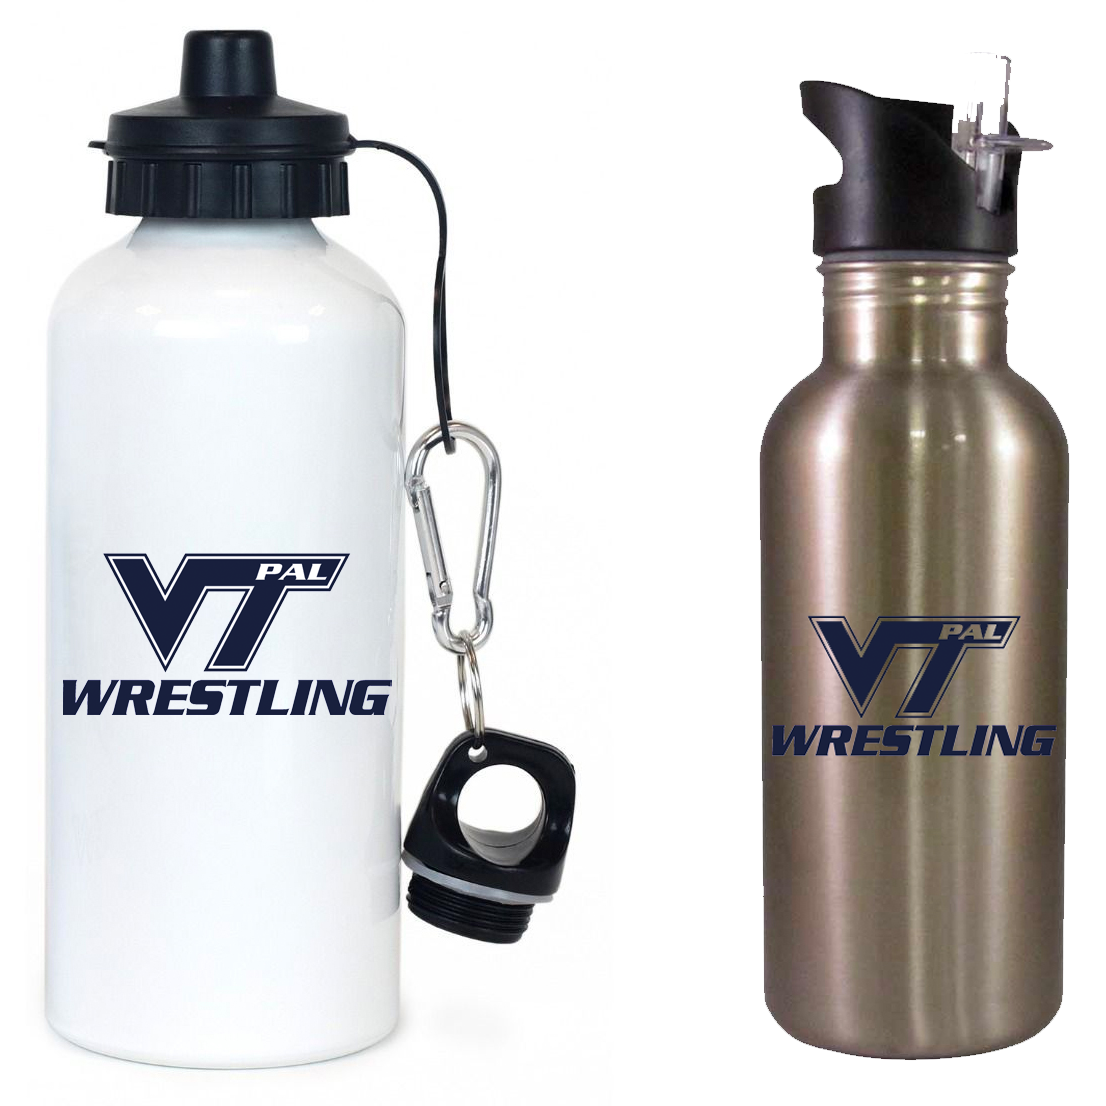 Vernon PAL Wrestling Team Water Bottle